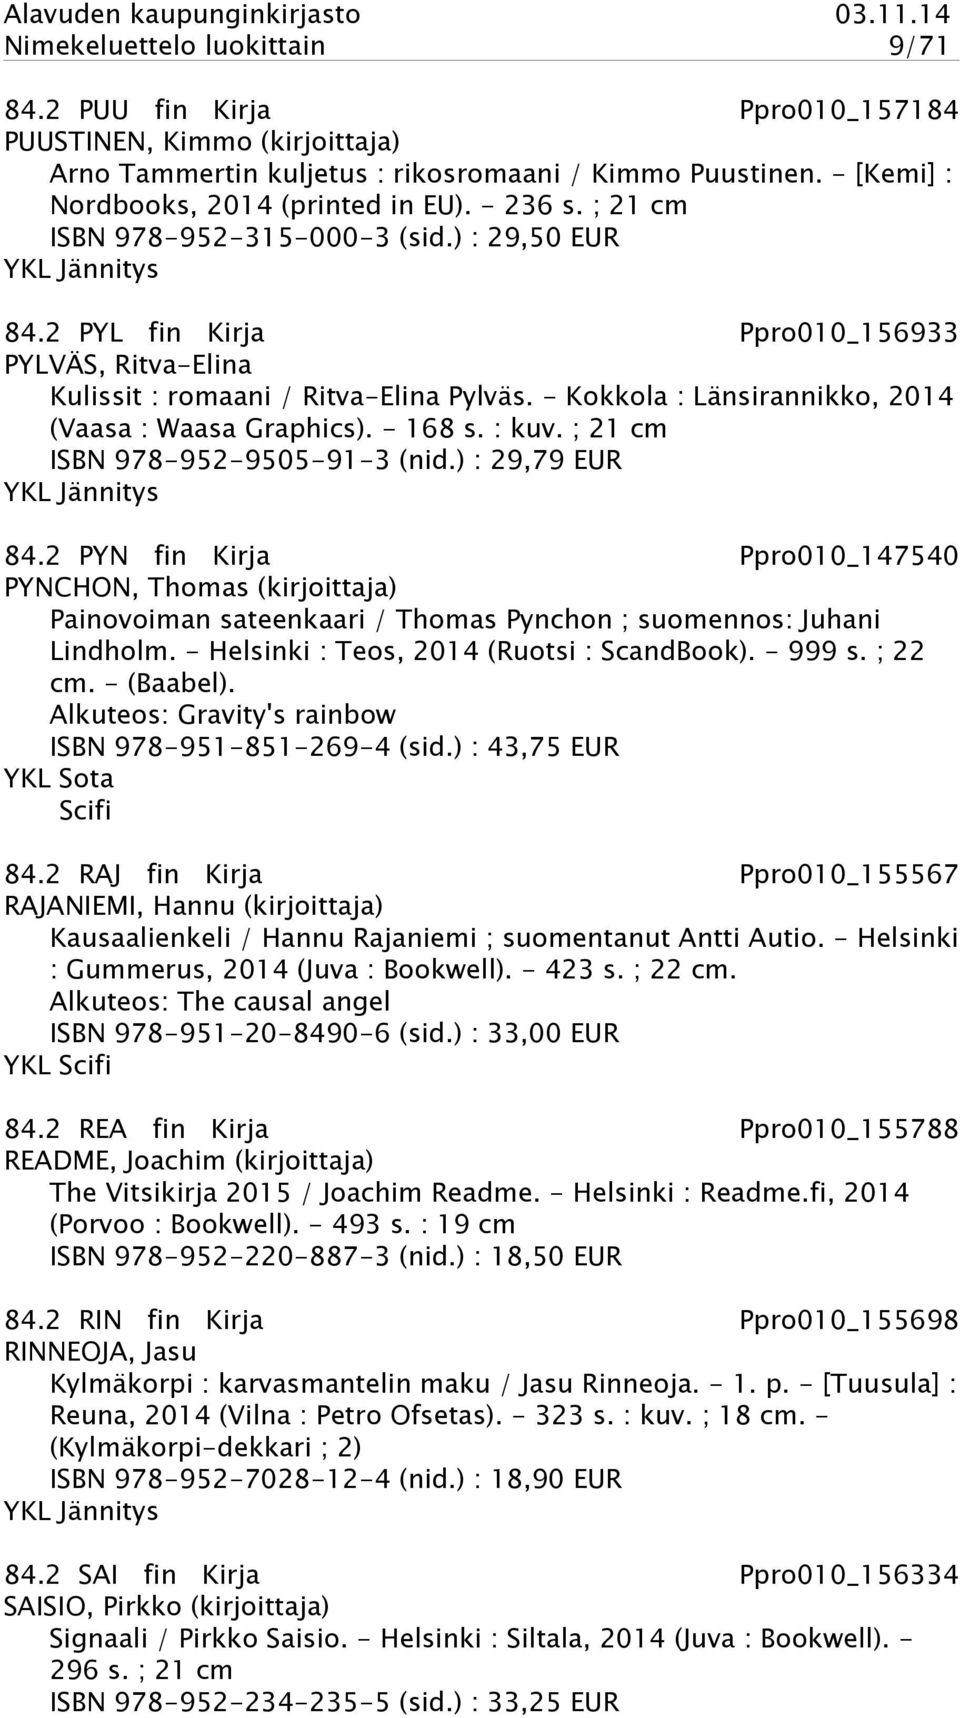 - Kokkola : Länsirannikko, 2014 (Vaasa : Waasa Graphics). - 168 s. : kuv. ; 21 cm ISBN 978-952-9505-91-3 (nid.) : 29,79 EUR YKL Jännitys 84.